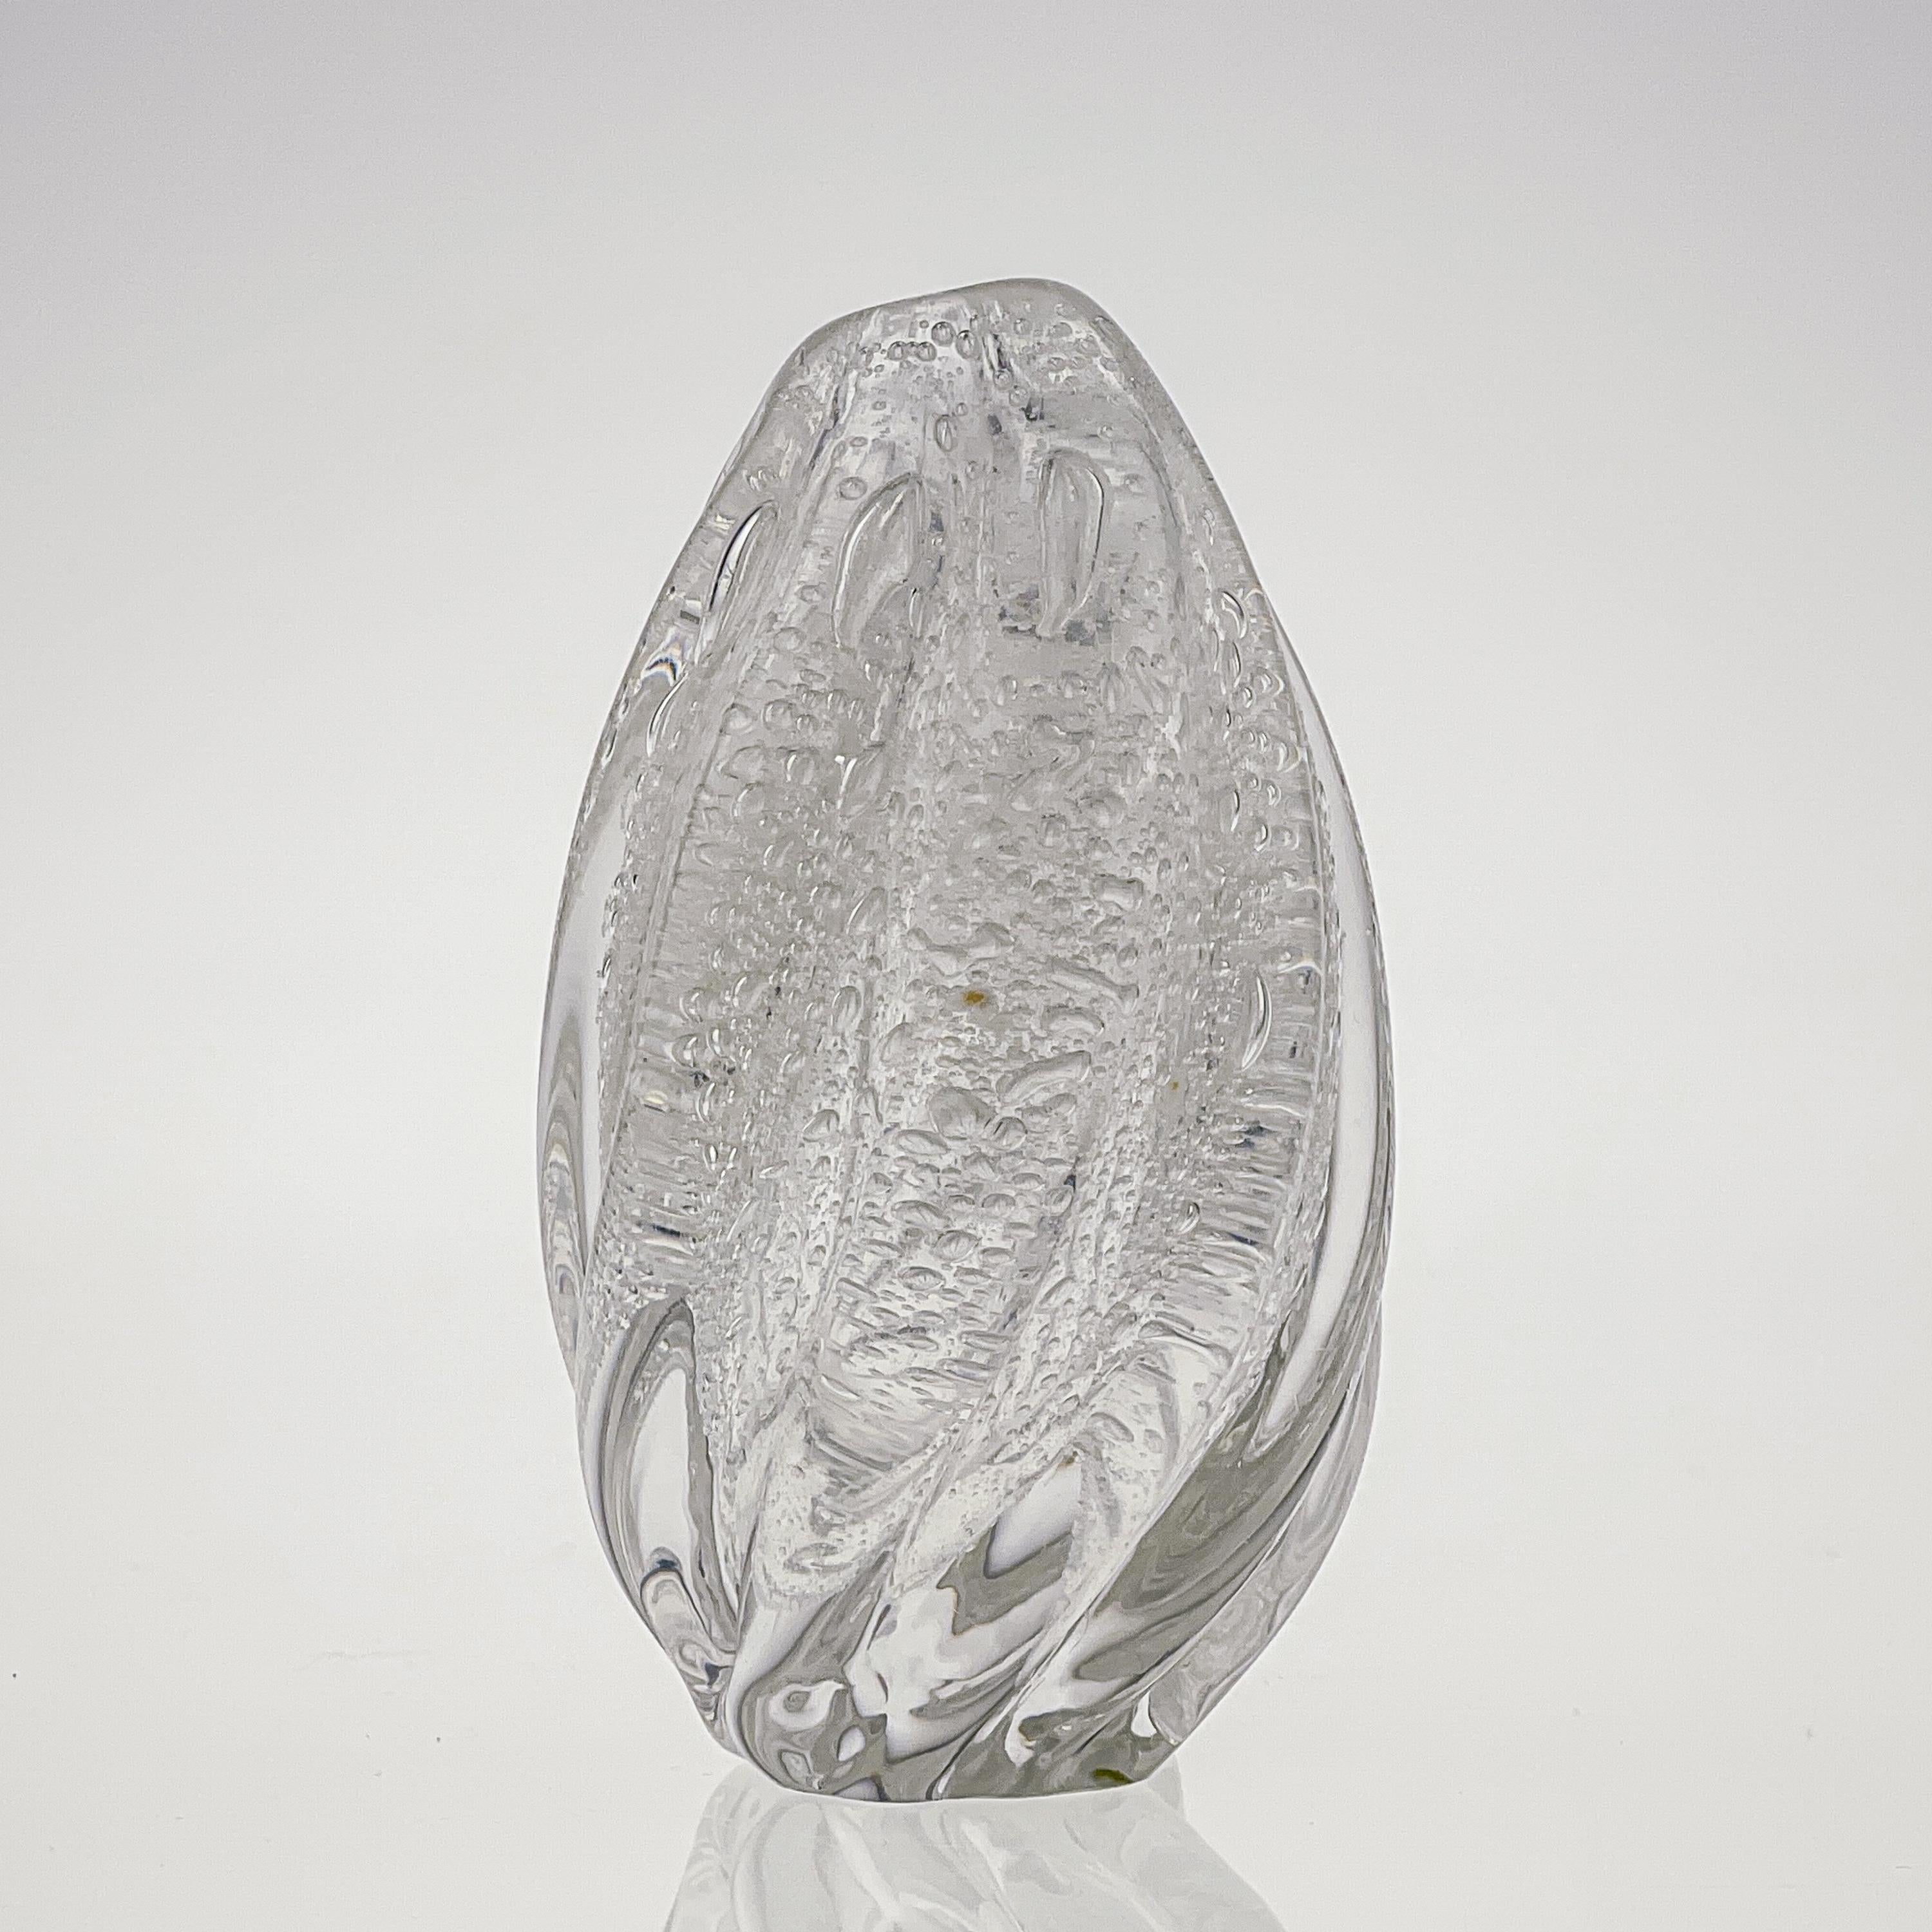 Mid-20th Century Scandinavian Modern Tapio Wirkkala Crystal Glass Art Vase Handblown Iittala 1948